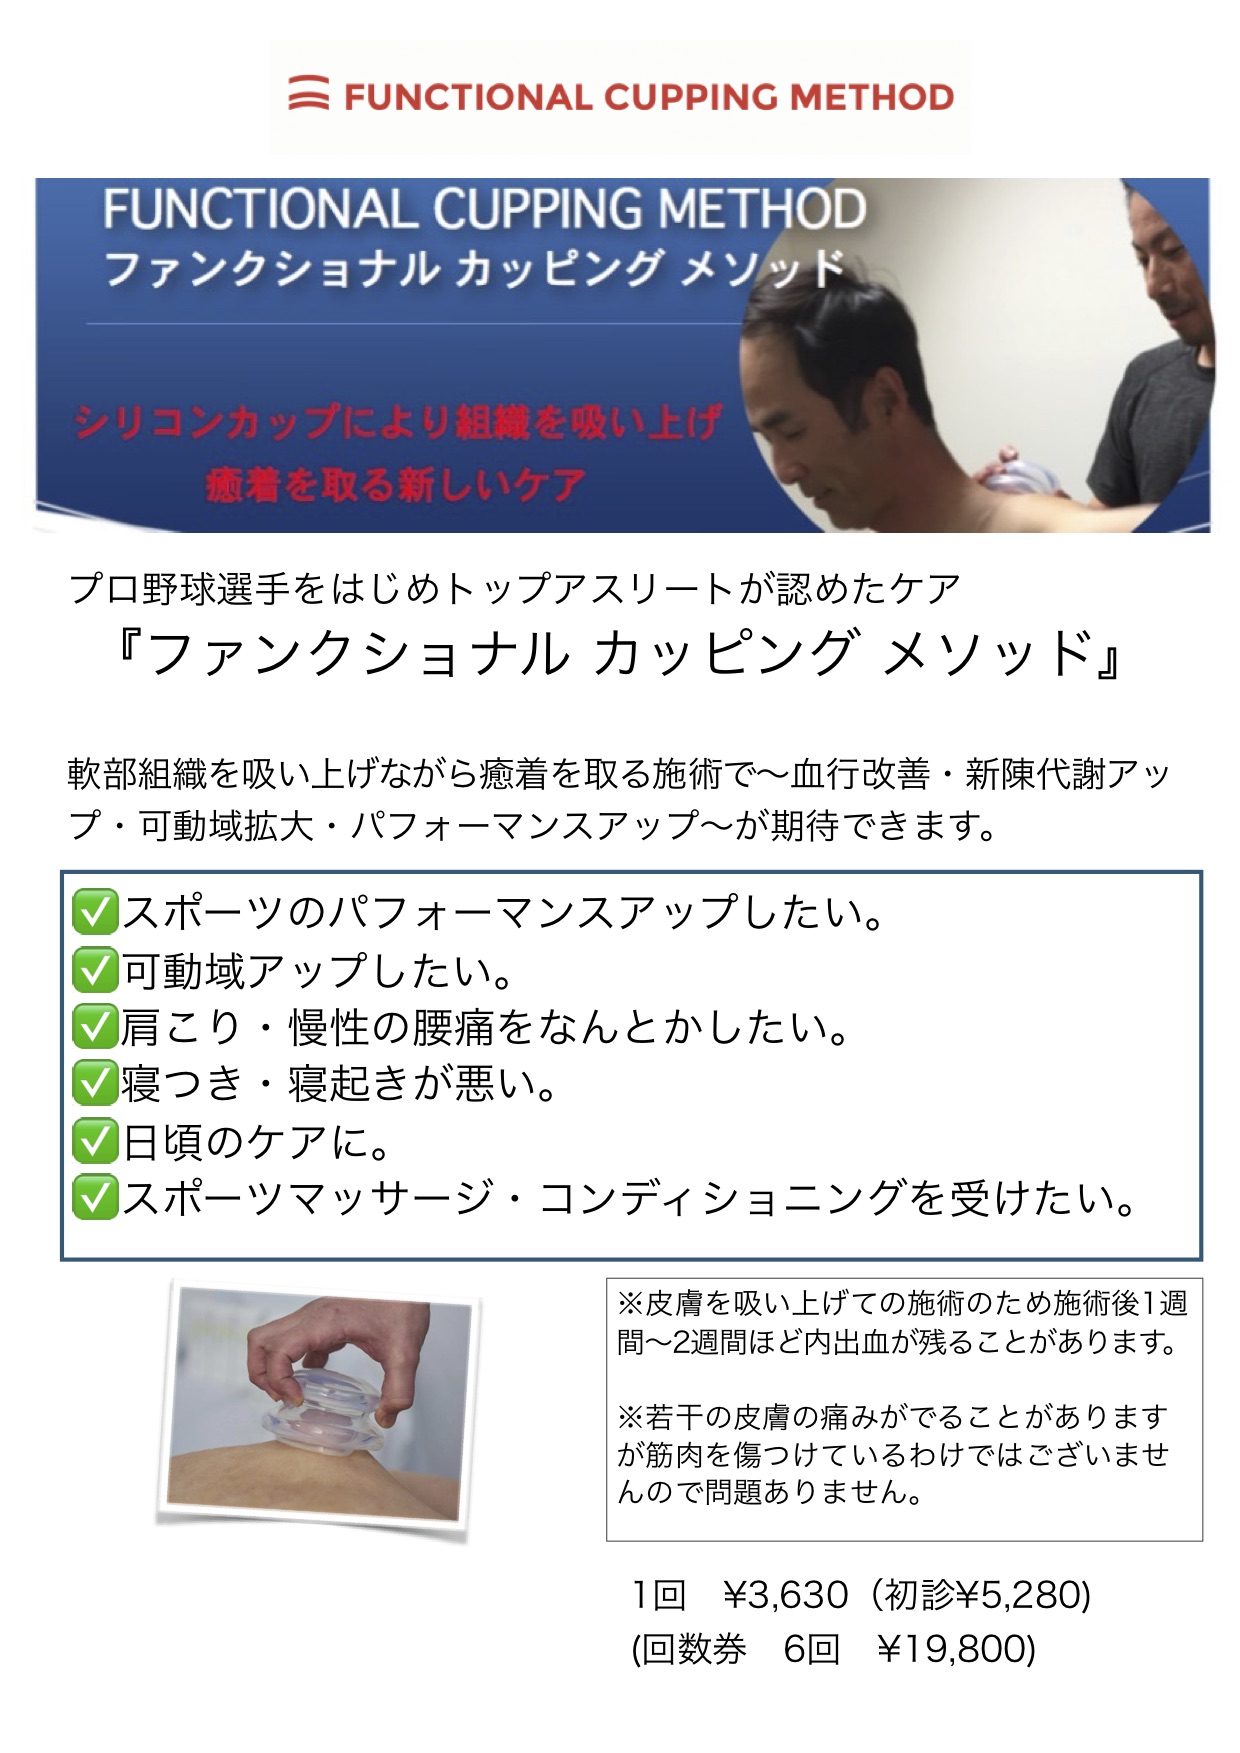 ファンクショナルカッピングメソッド ほりえ鍼灸接骨院コンディショニングルーム 広島市西区